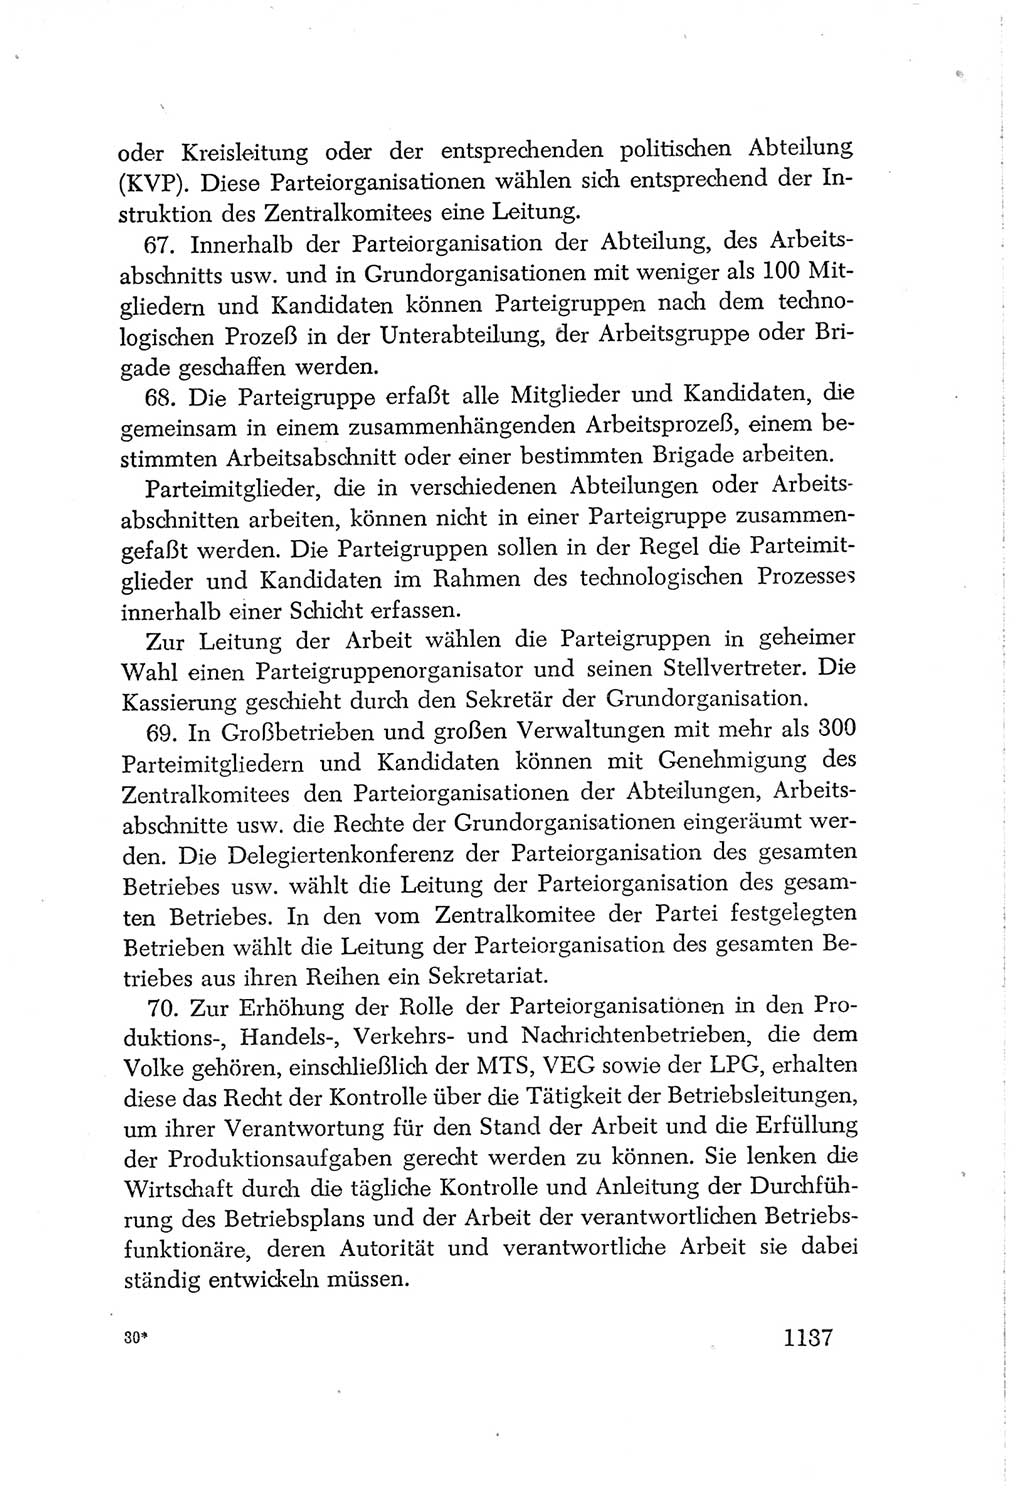 Protokoll der Verhandlungen des Ⅳ. Parteitages der Sozialistischen Einheitspartei Deutschlands (SED) [Deutsche Demokratische Republik (DDR)] 1954, Seite 1137